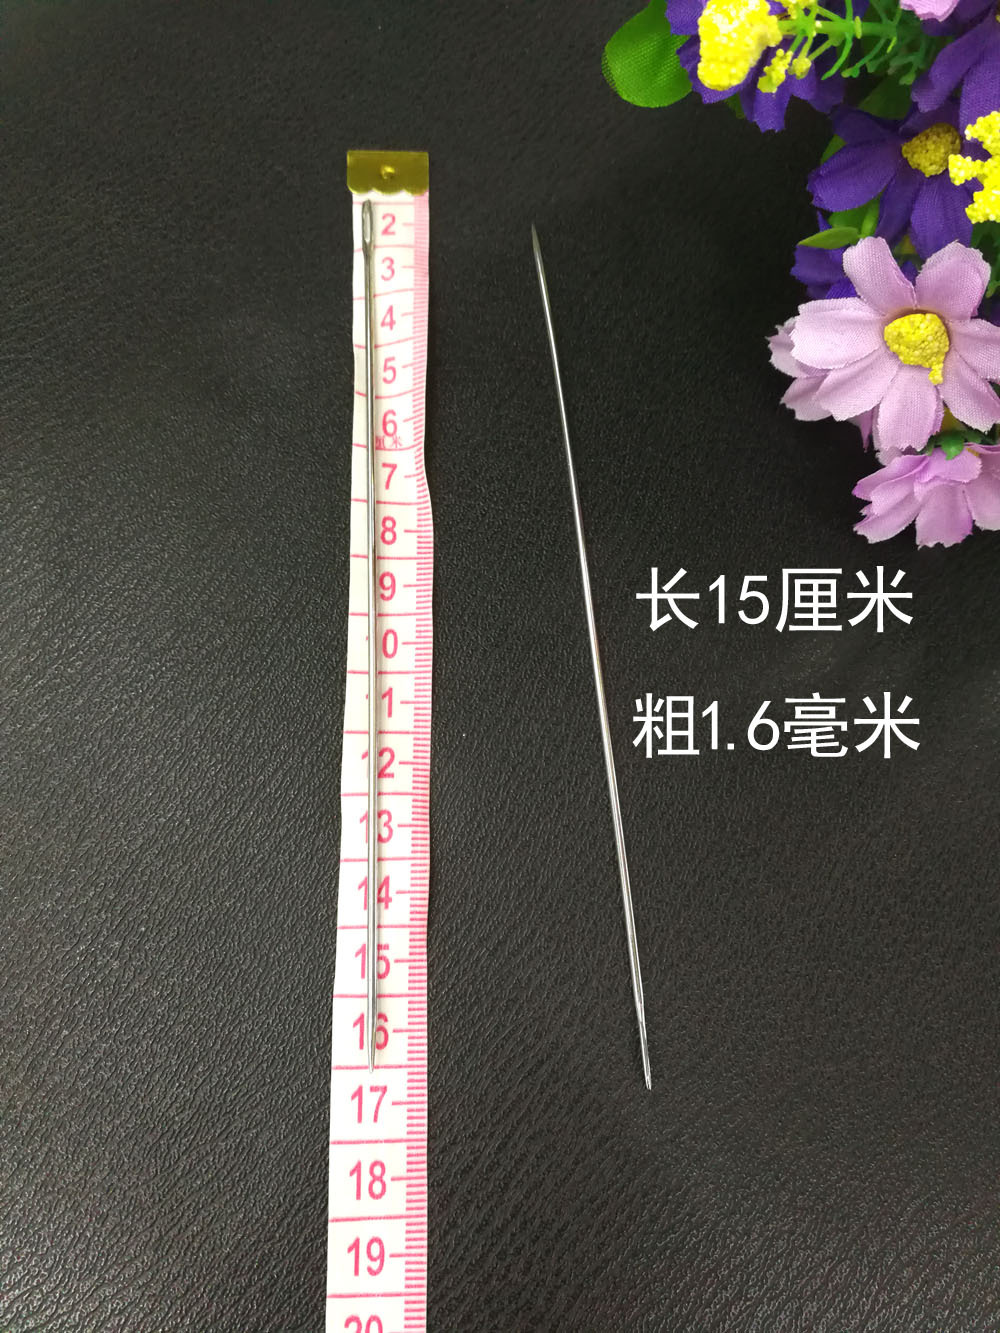 针粗为1.6毫米,长度为15厘米,20根针一包